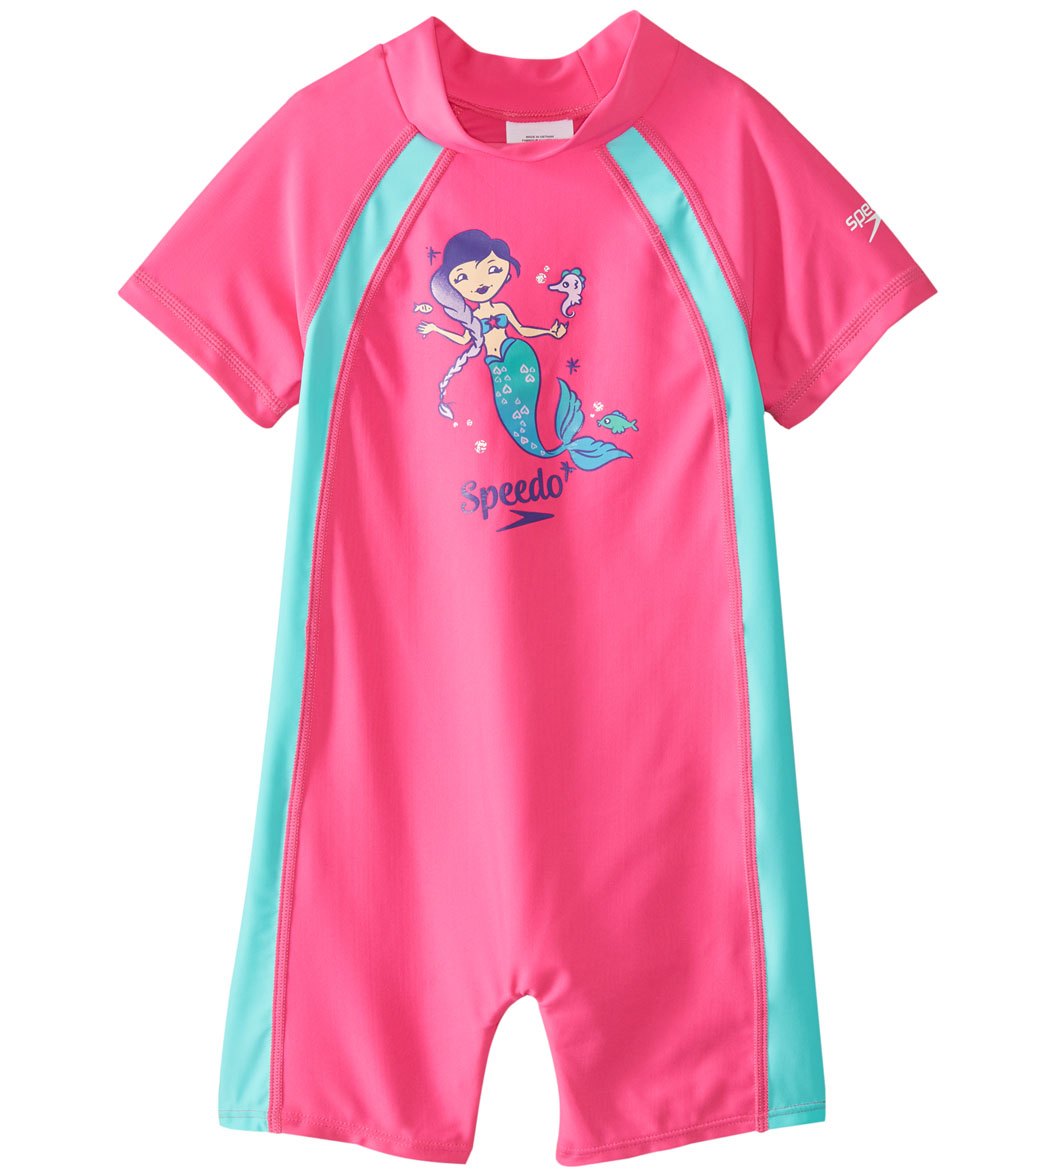 Speedo Girls' Short Sleeve Sun Suit Upf 50+ 12 Months-3T - Pink 2T - Swimoutlet.com